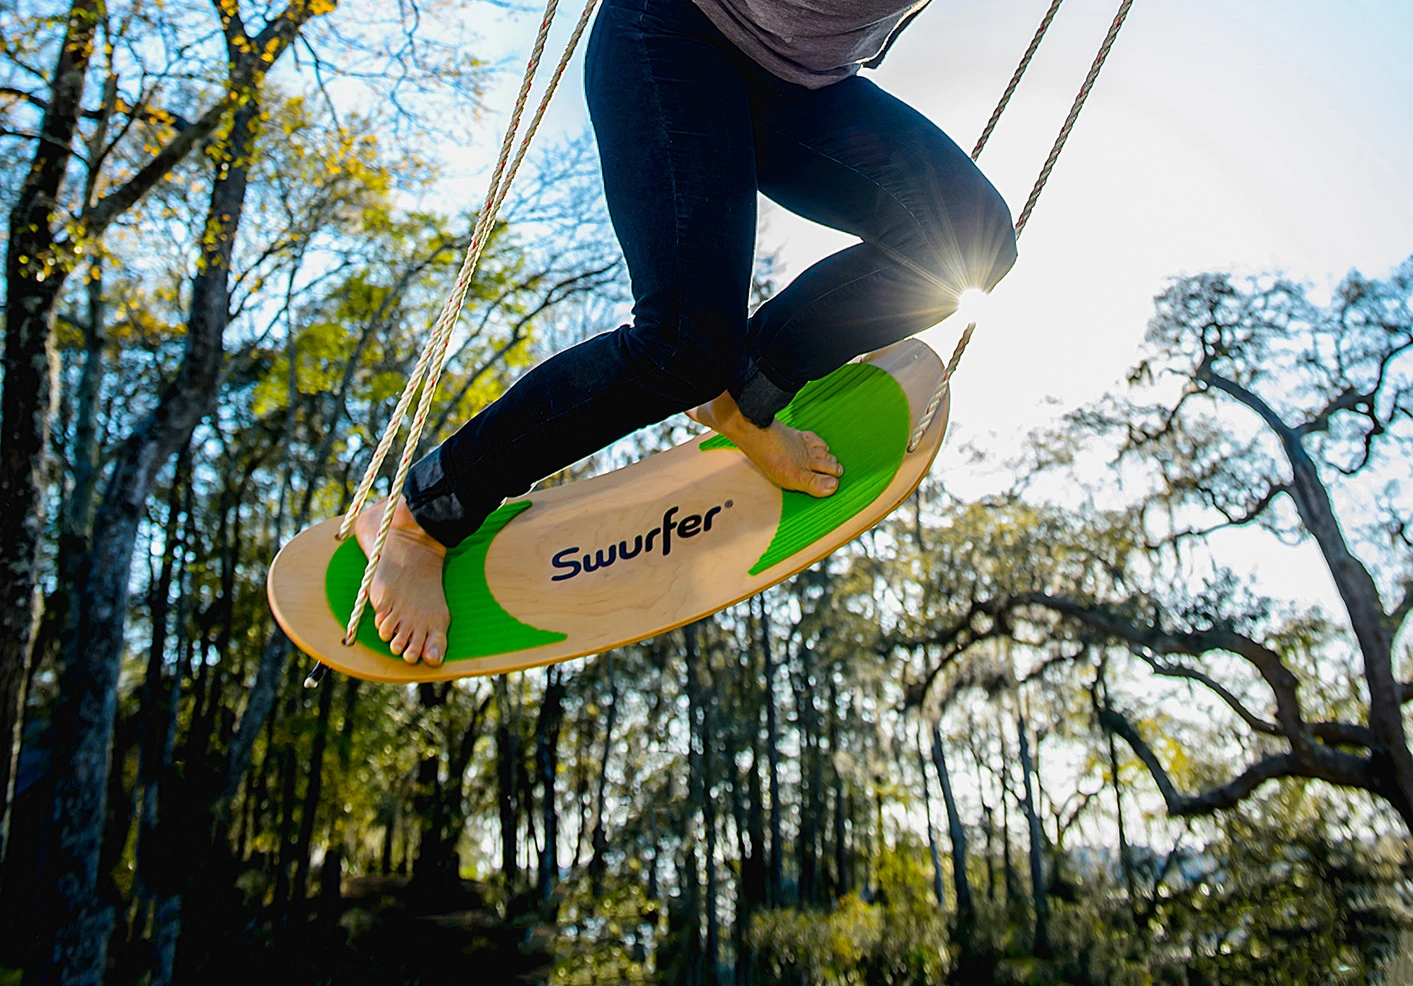 swurfer swingboard gift for outdoorsy people